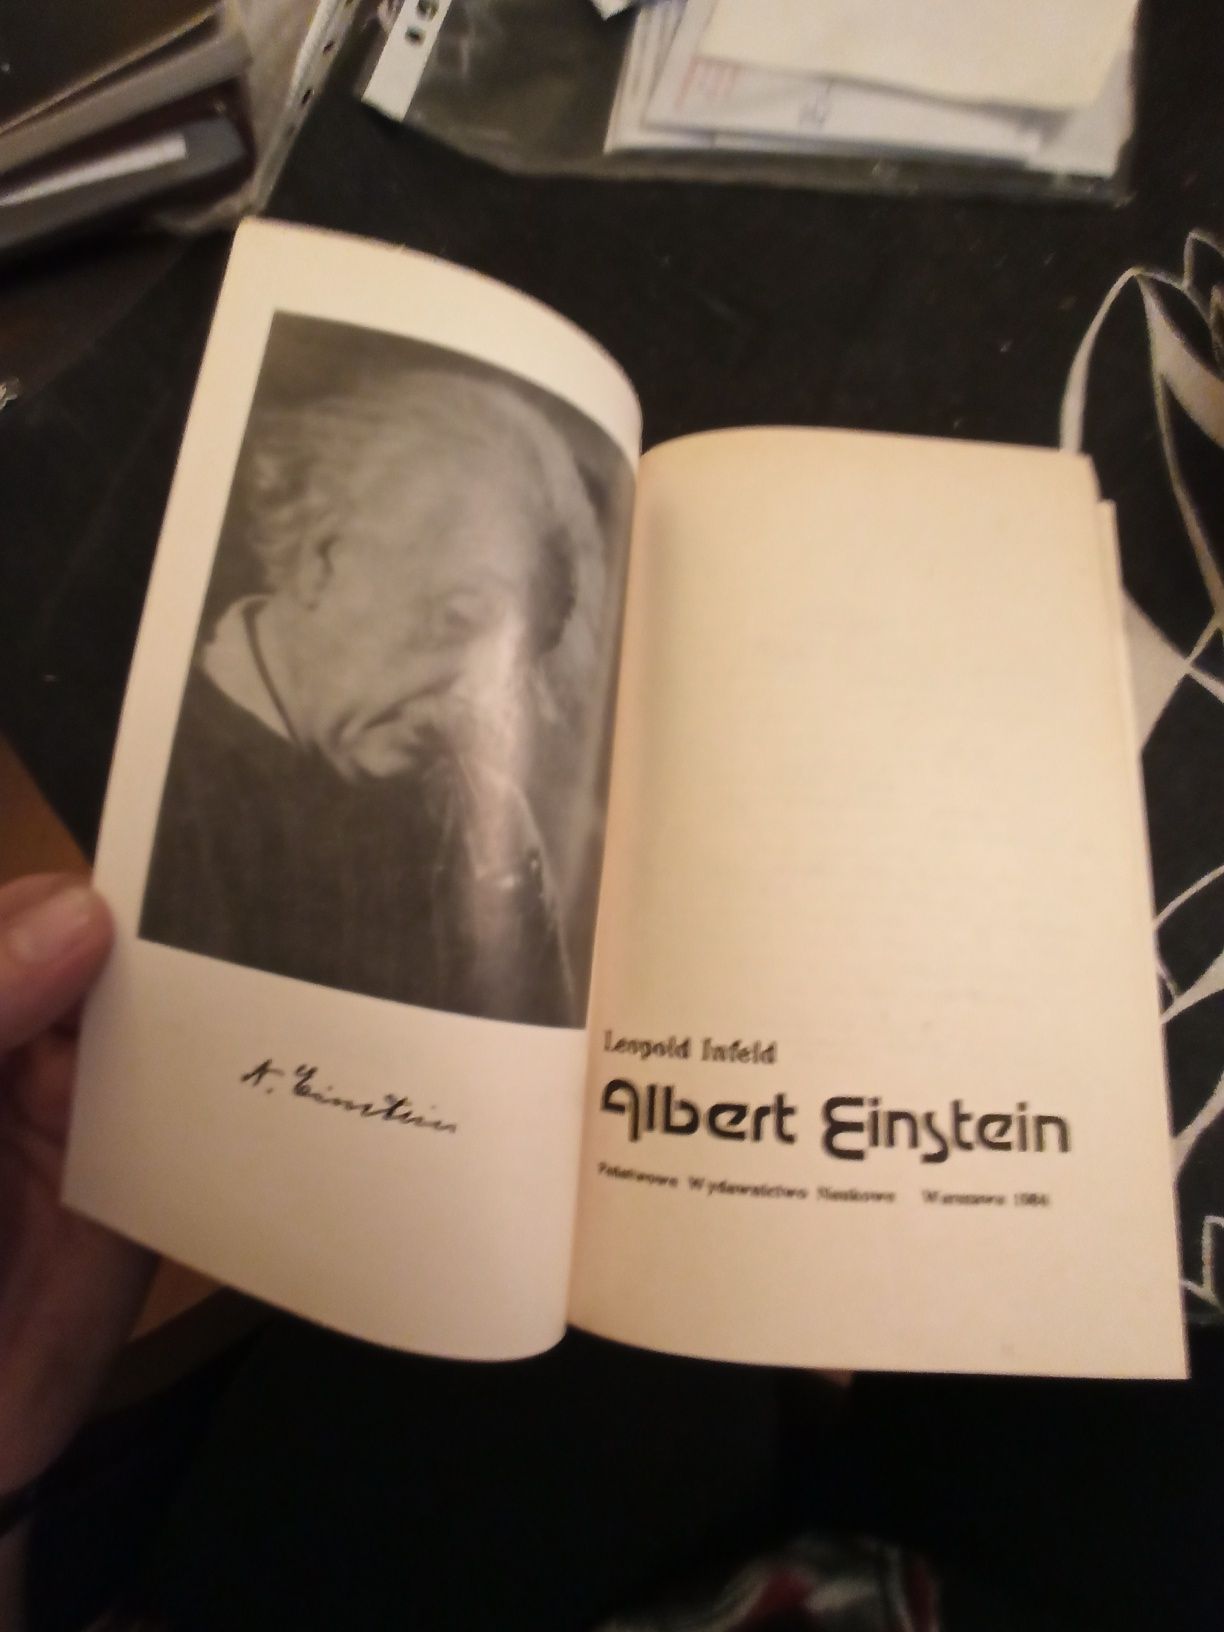 Infeld Albert Einstein